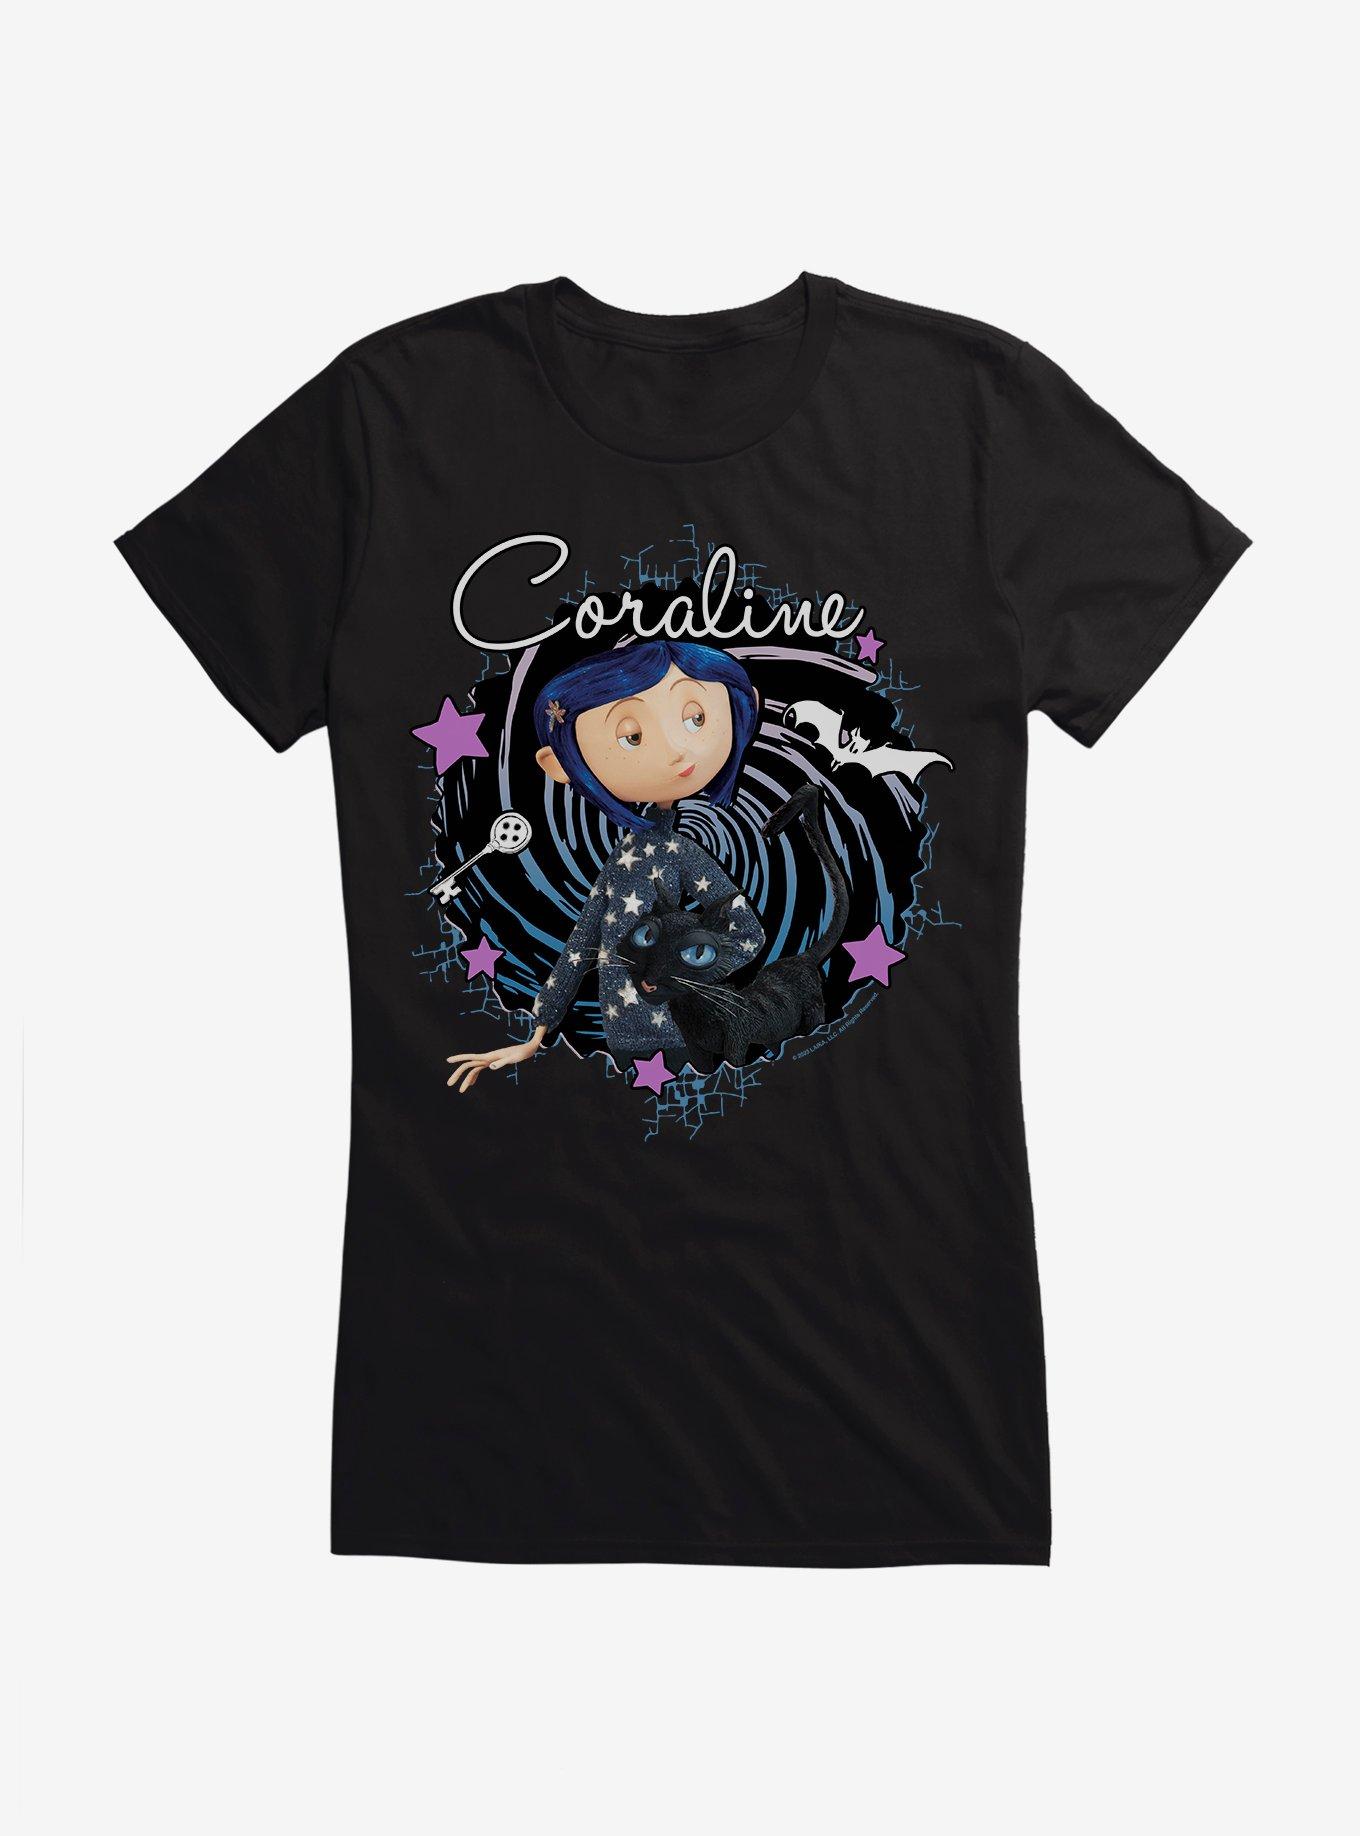 Coraline The Cat Swirl And Stars Girls T-Shirt, BLACK, hi-res